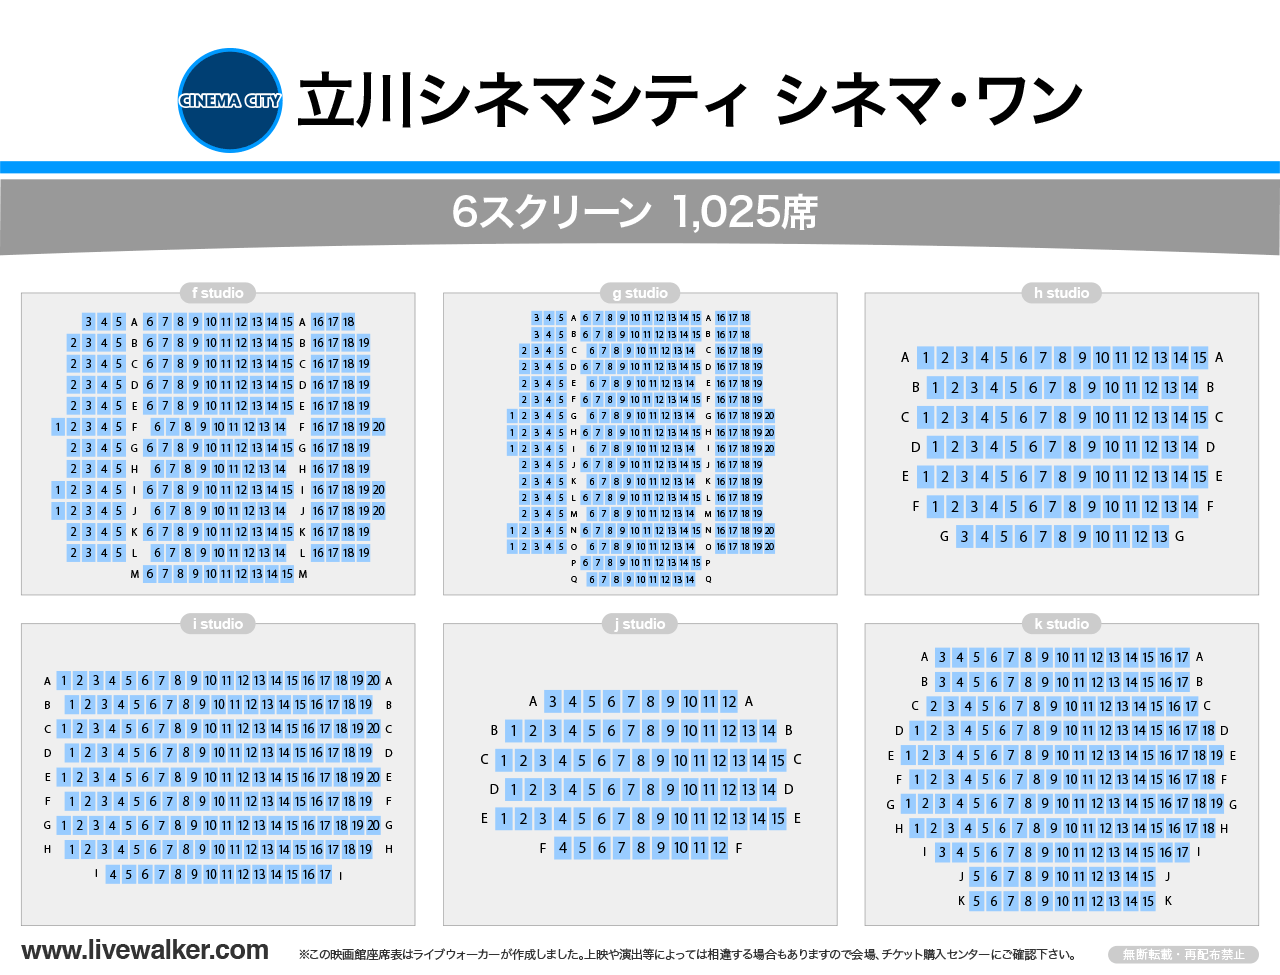 立川シネマシティ シネマ・ワンスタジオの座席表